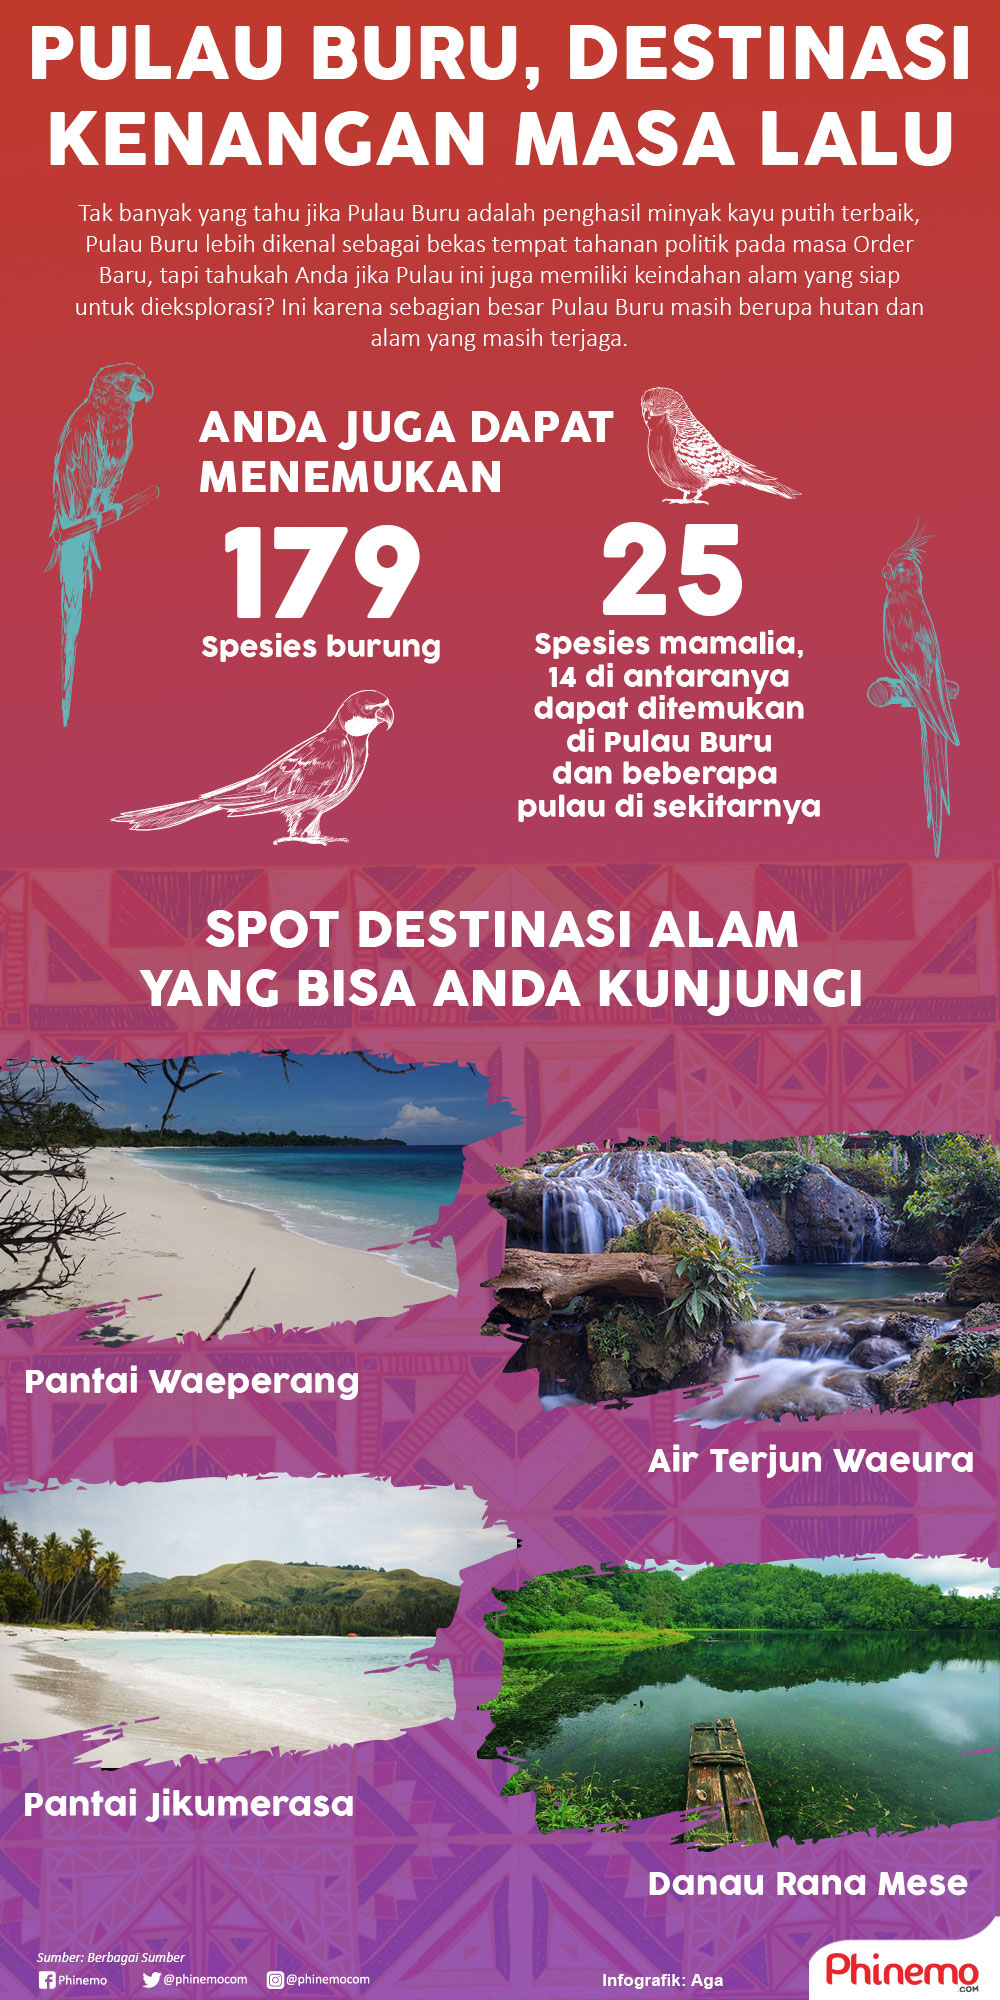 Infografik Pulau Buru, Destinasi Kenangan Masa Lalu yang Menyimpan Keindahan Alam Indonesia